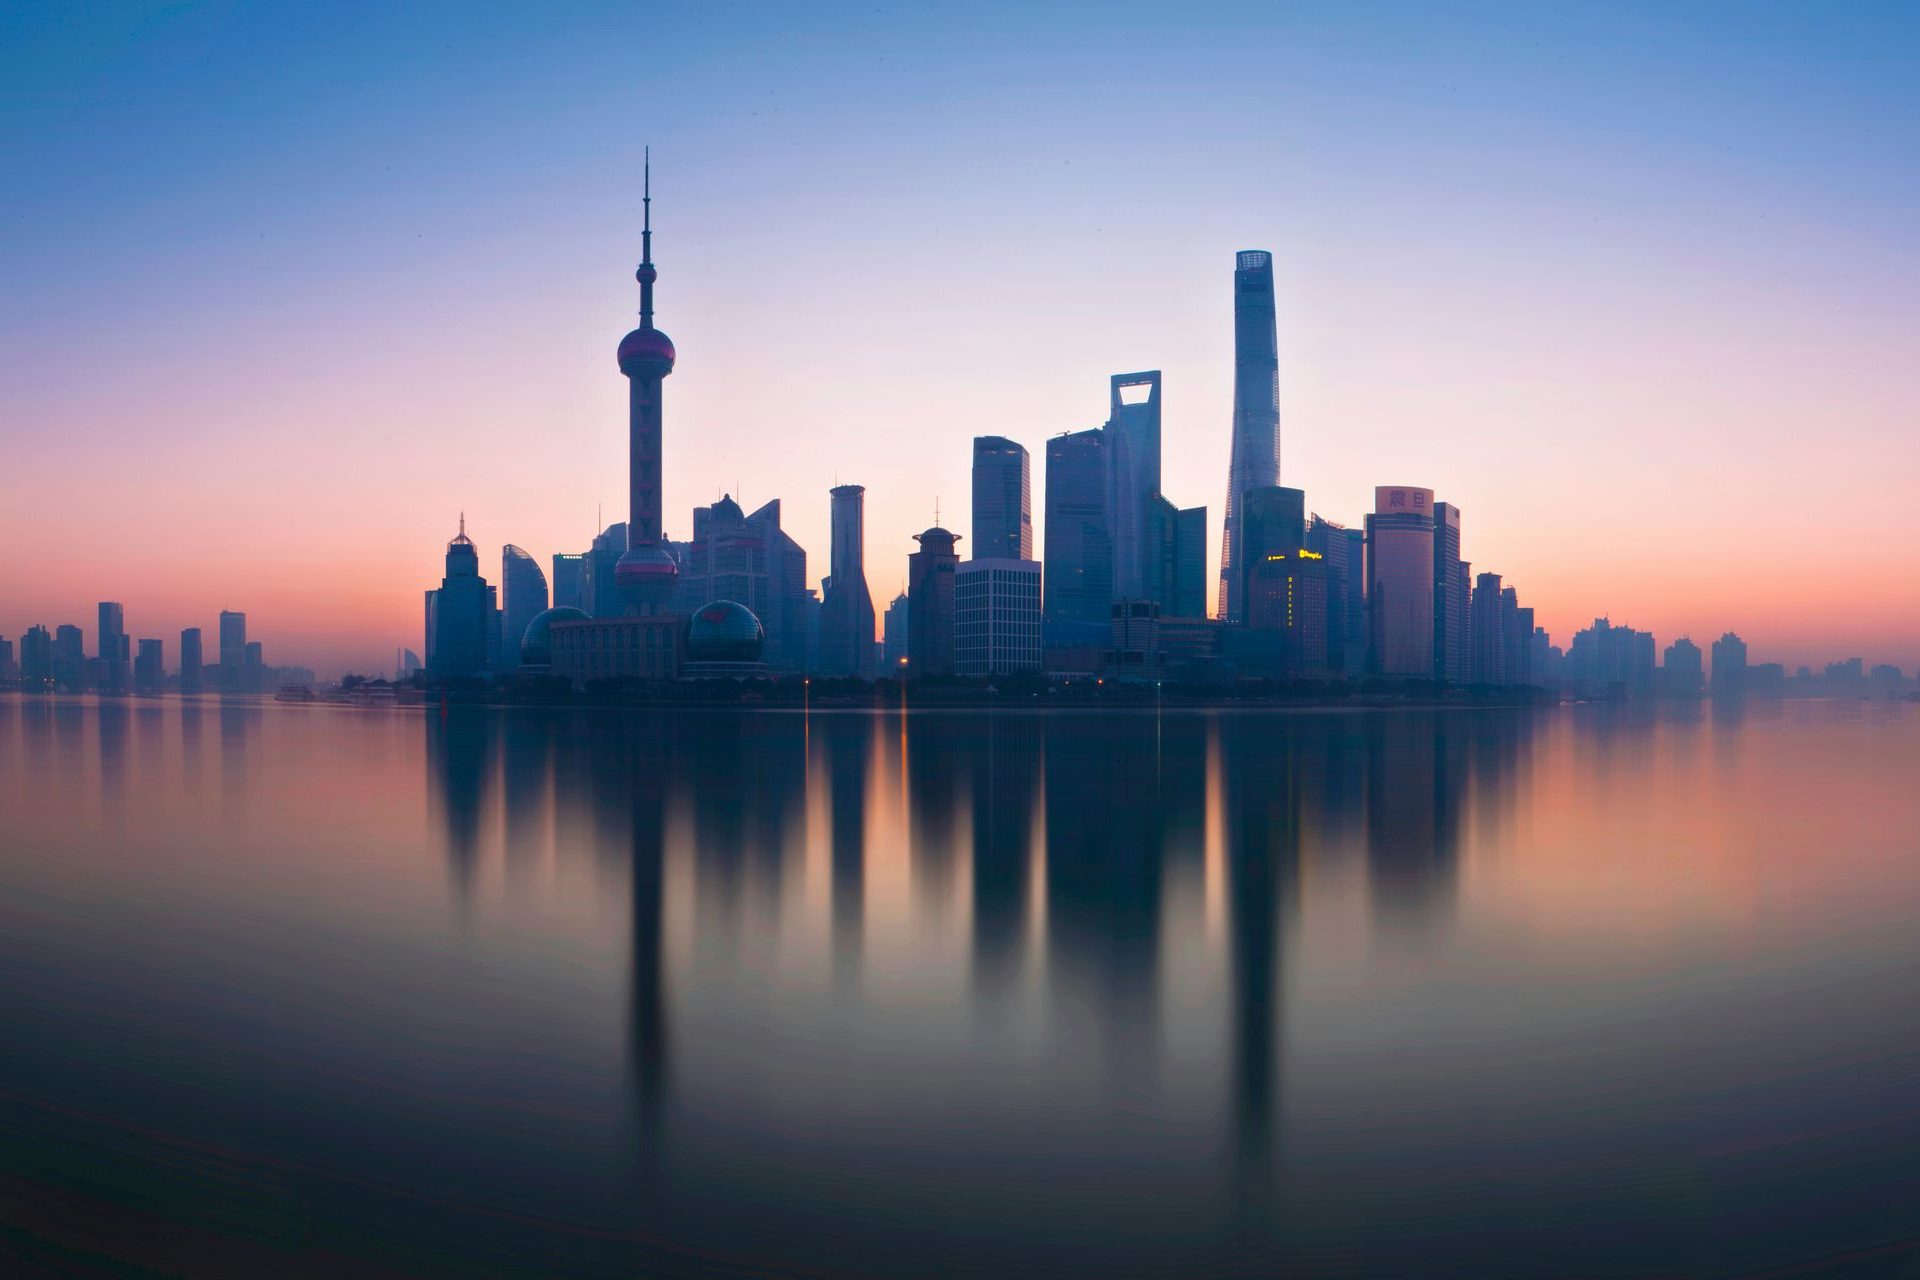 10. Shanghái (130.100 millonarios)